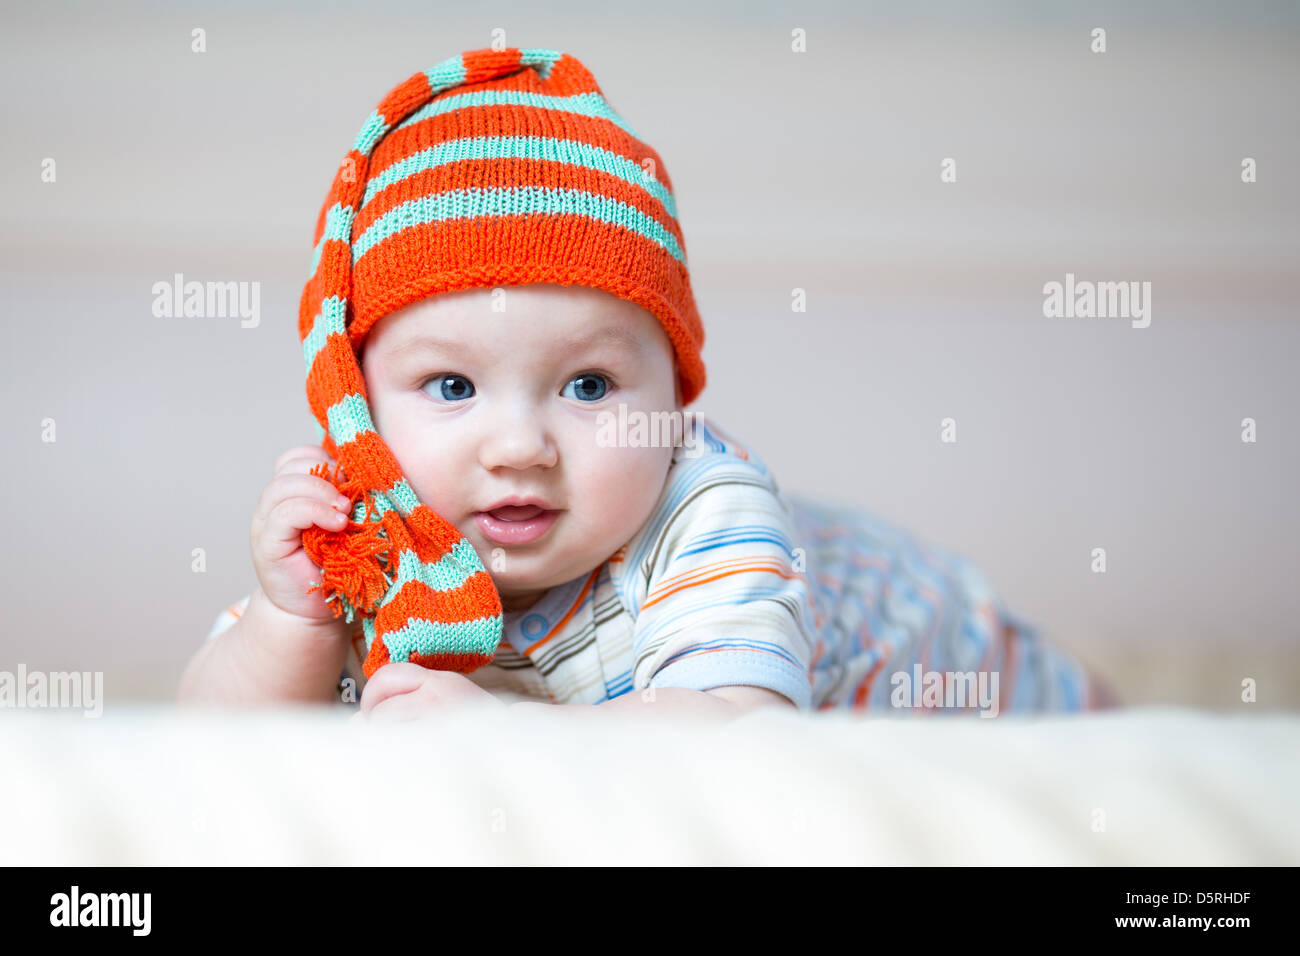 Carino strisciando baby boy giocando in ambienti interni Foto Stock